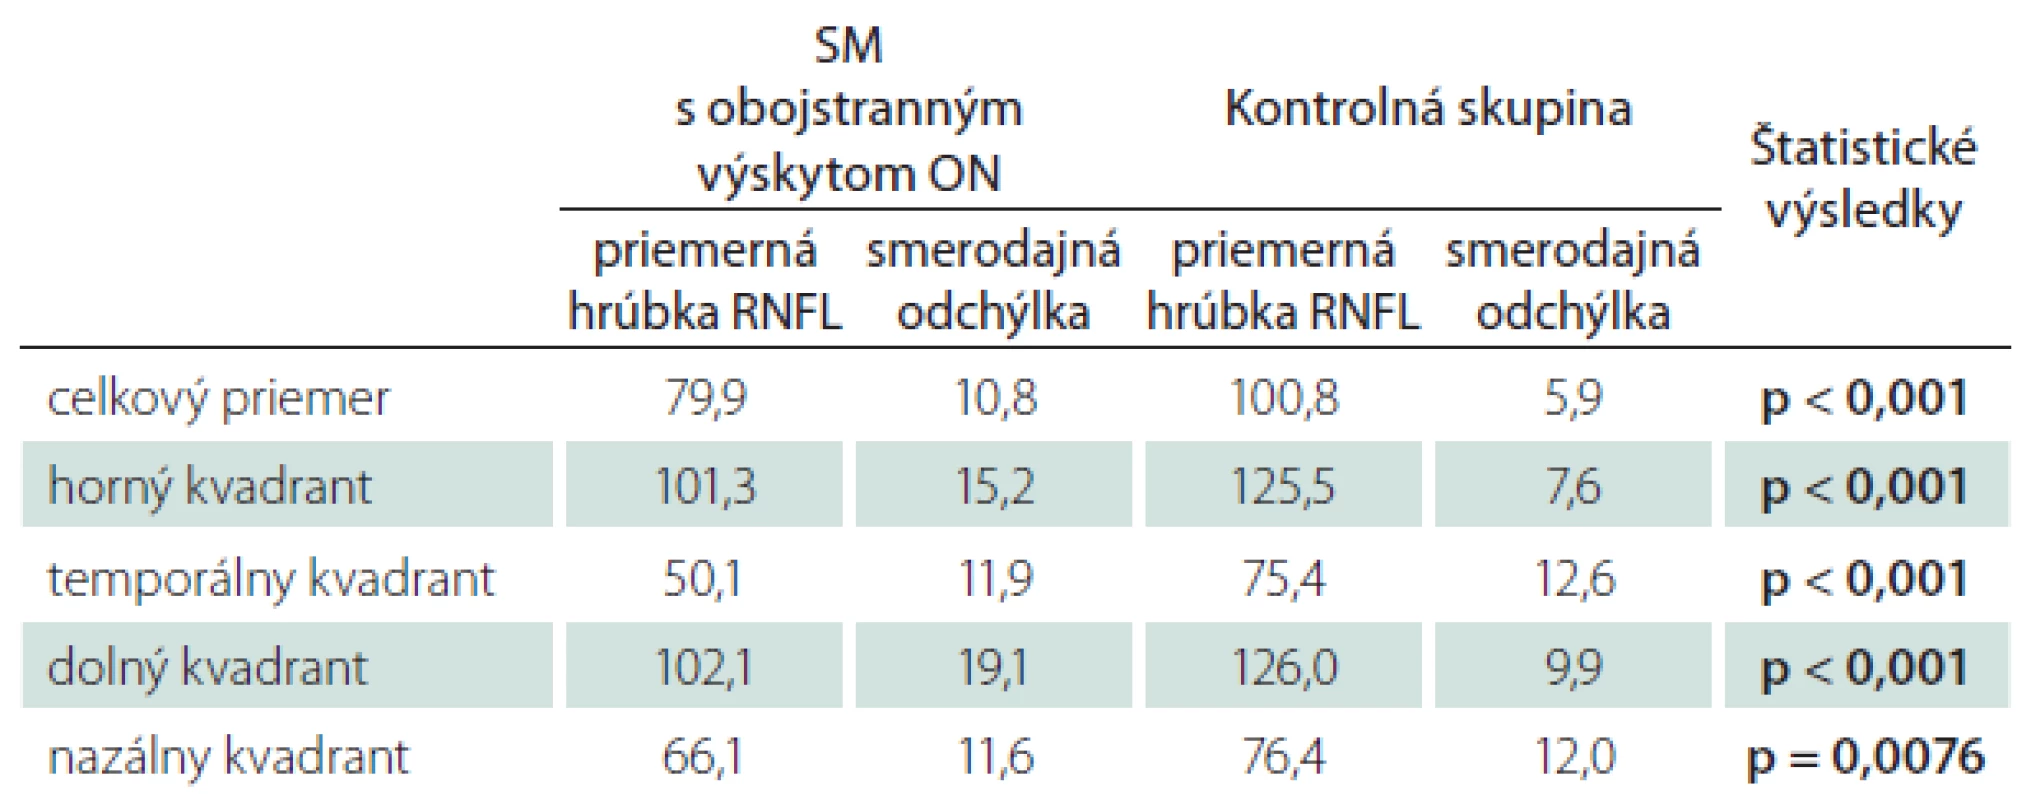 Priemerné hodnoty hrúbky RNFL u pacientov s SM a ON v anamnéze na oboch očiach. Štatistické spracovanie.